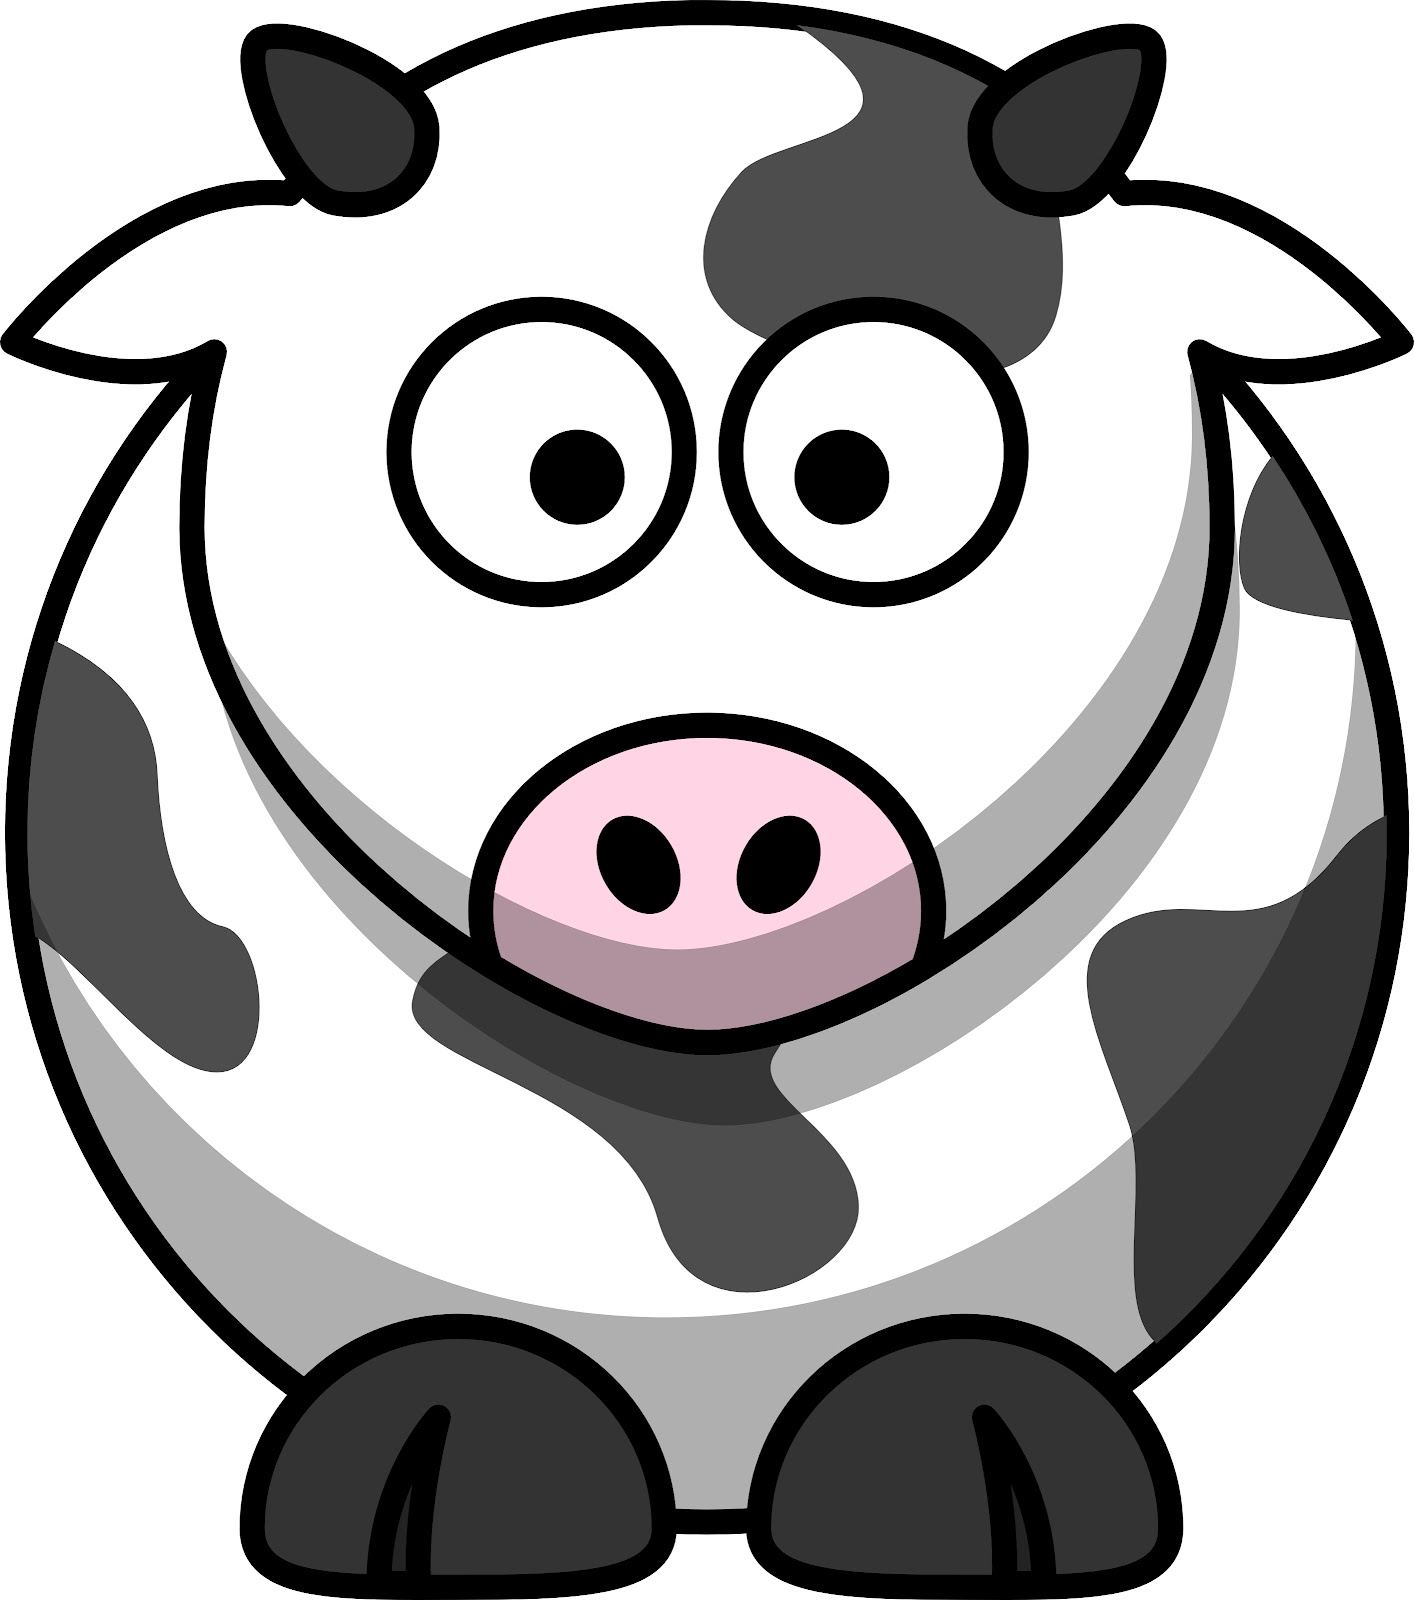 cow-clip-art-images-cliparts-co